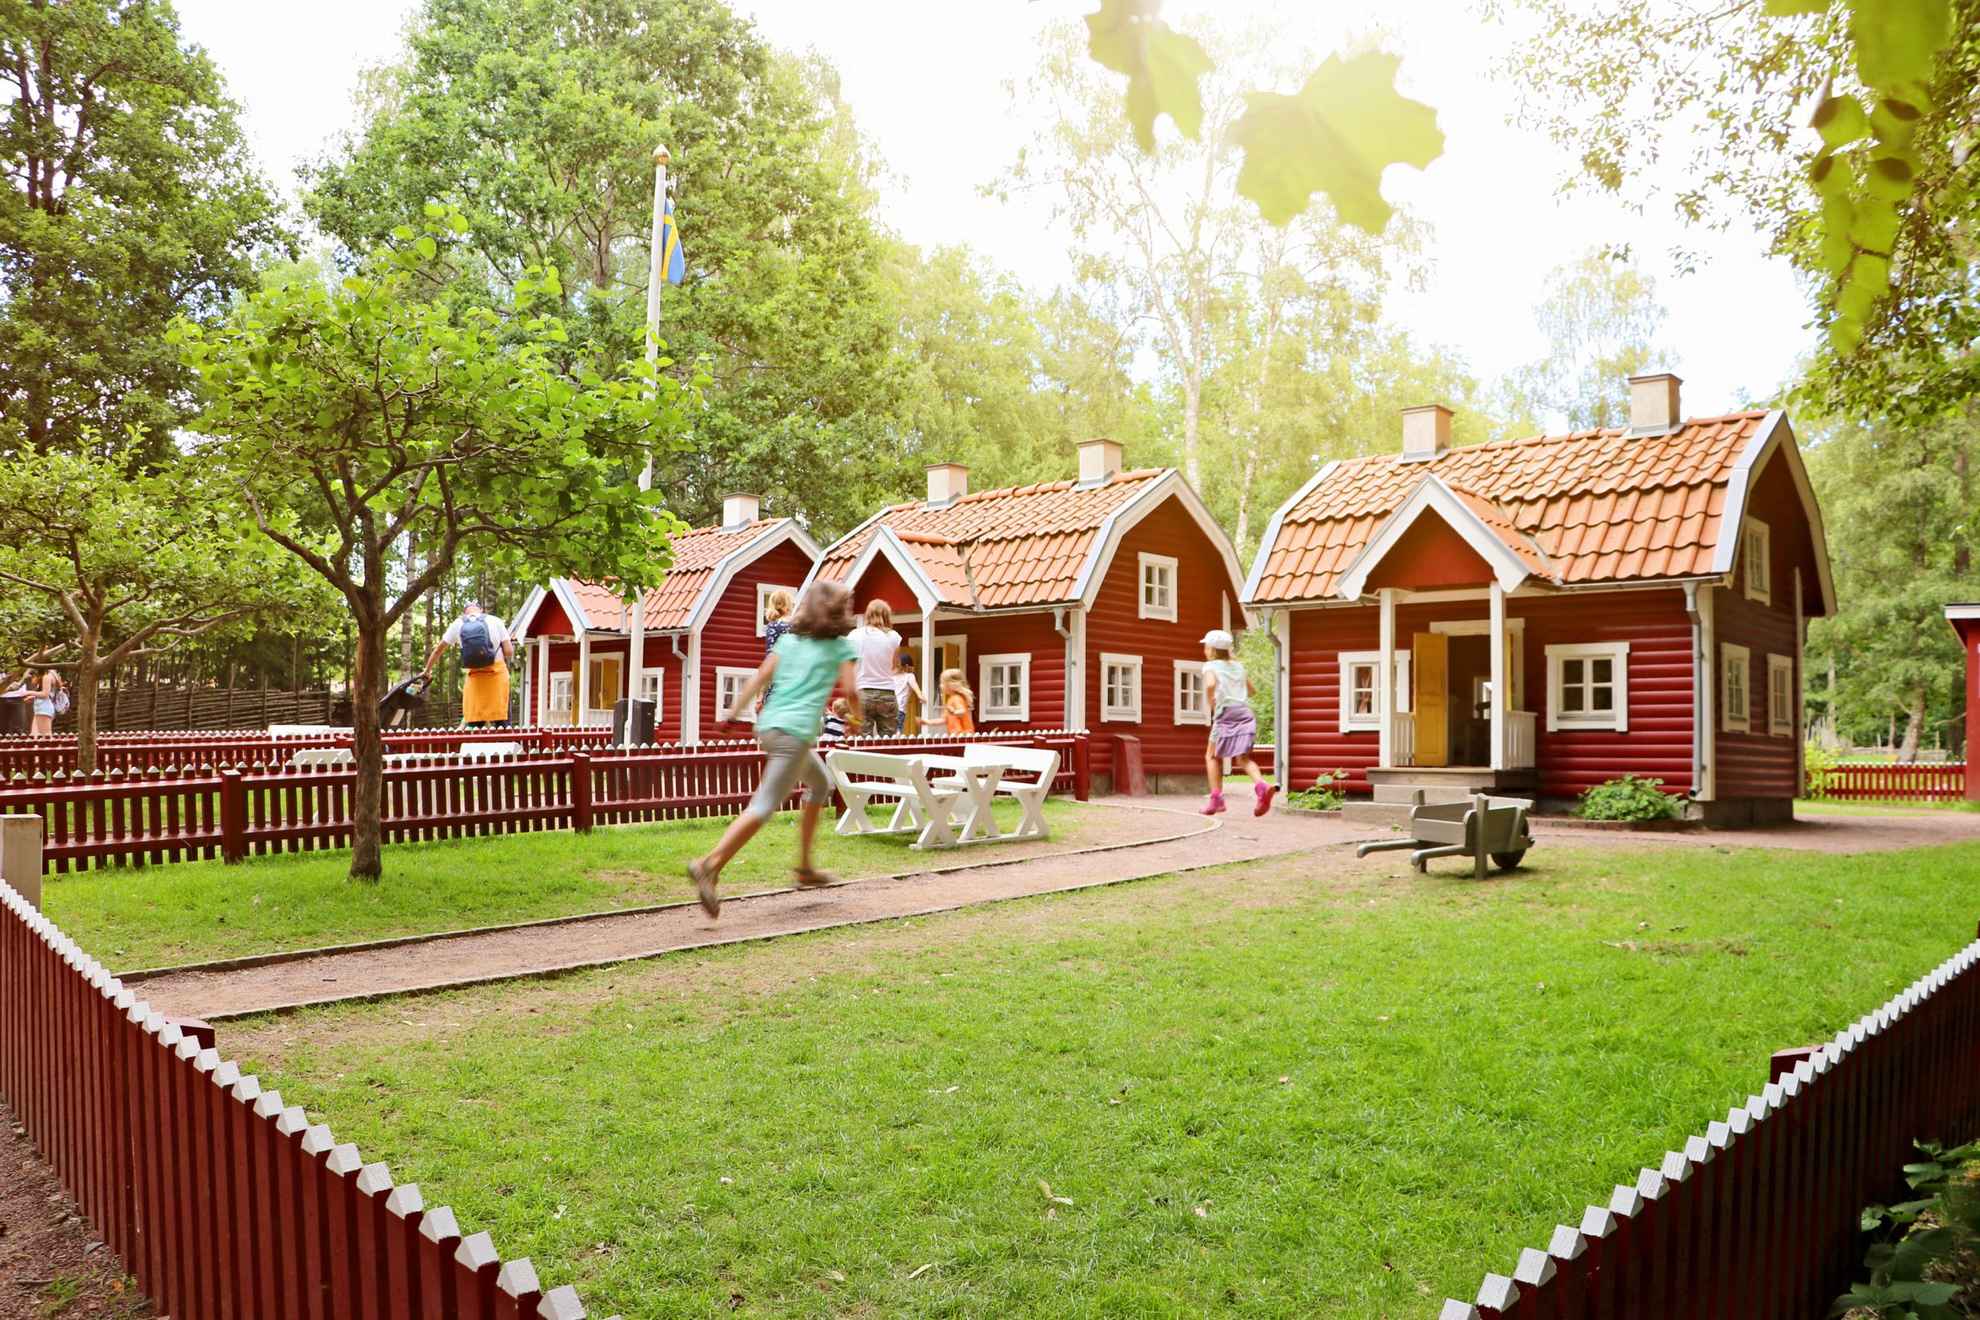 Le village de Bullerbyn dans le monde d'Astrid Lindgren dans le Småland